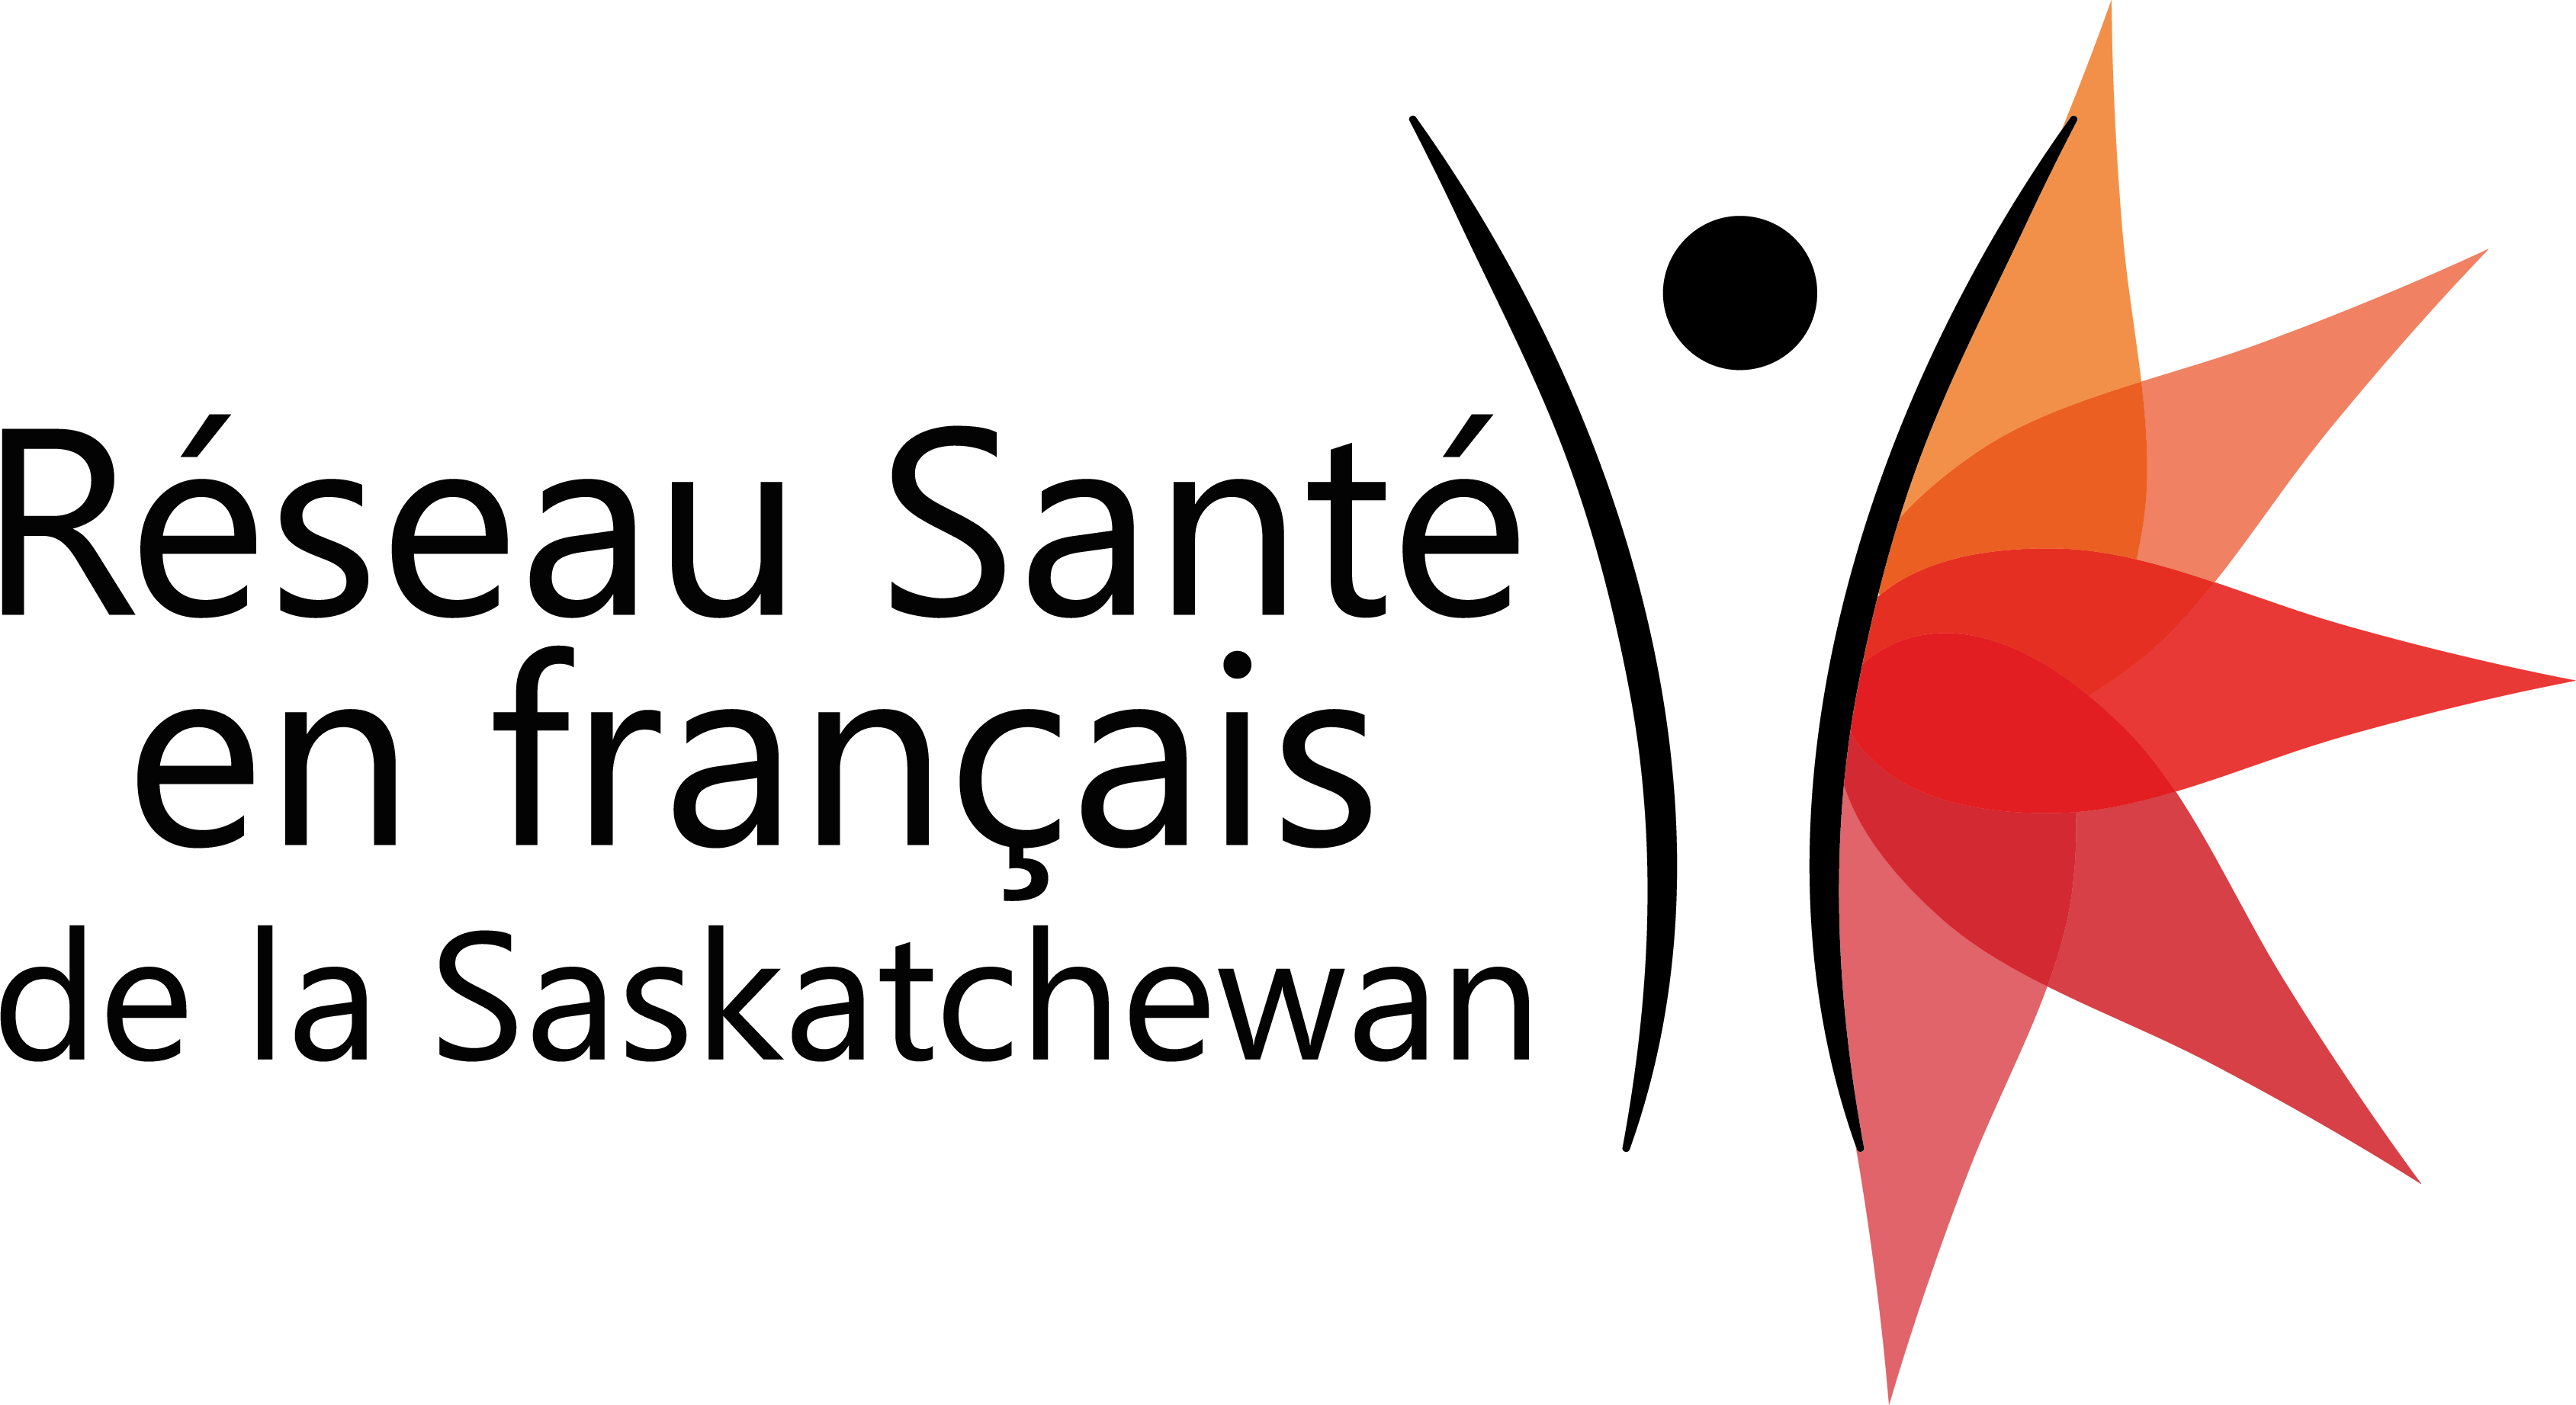 Réseau Santé de la Saskatchewan